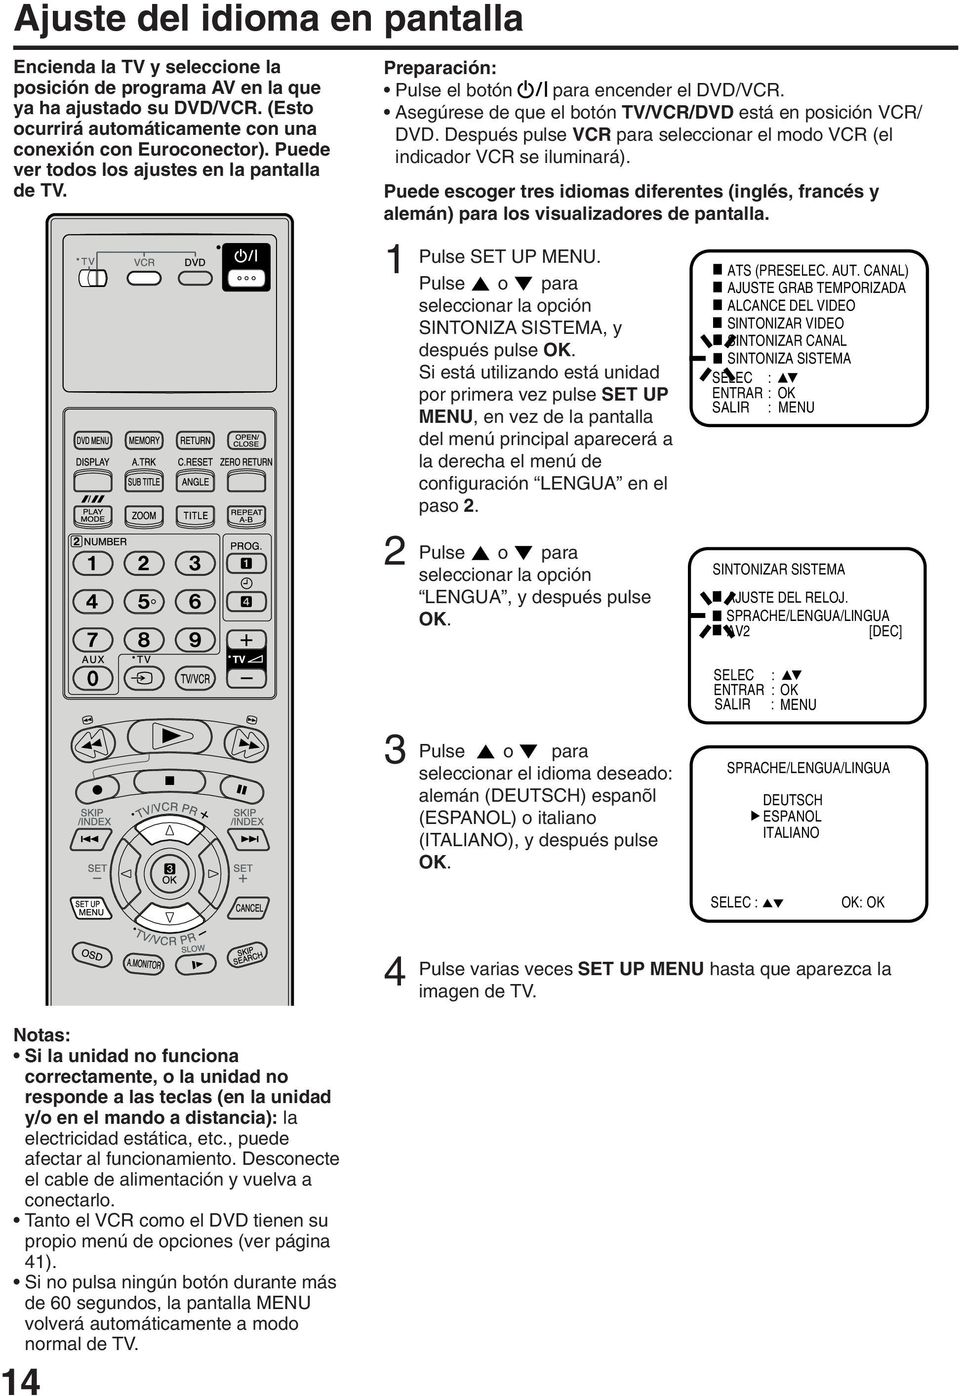 Después pulse VCR para seleccionar el modo VCR (el indicador VCR se iluminará). Puede escoger tres idiomas diferentes (inglés, francés y alemán) para los visualizadores de pantalla. Pulse SET UP MENU.